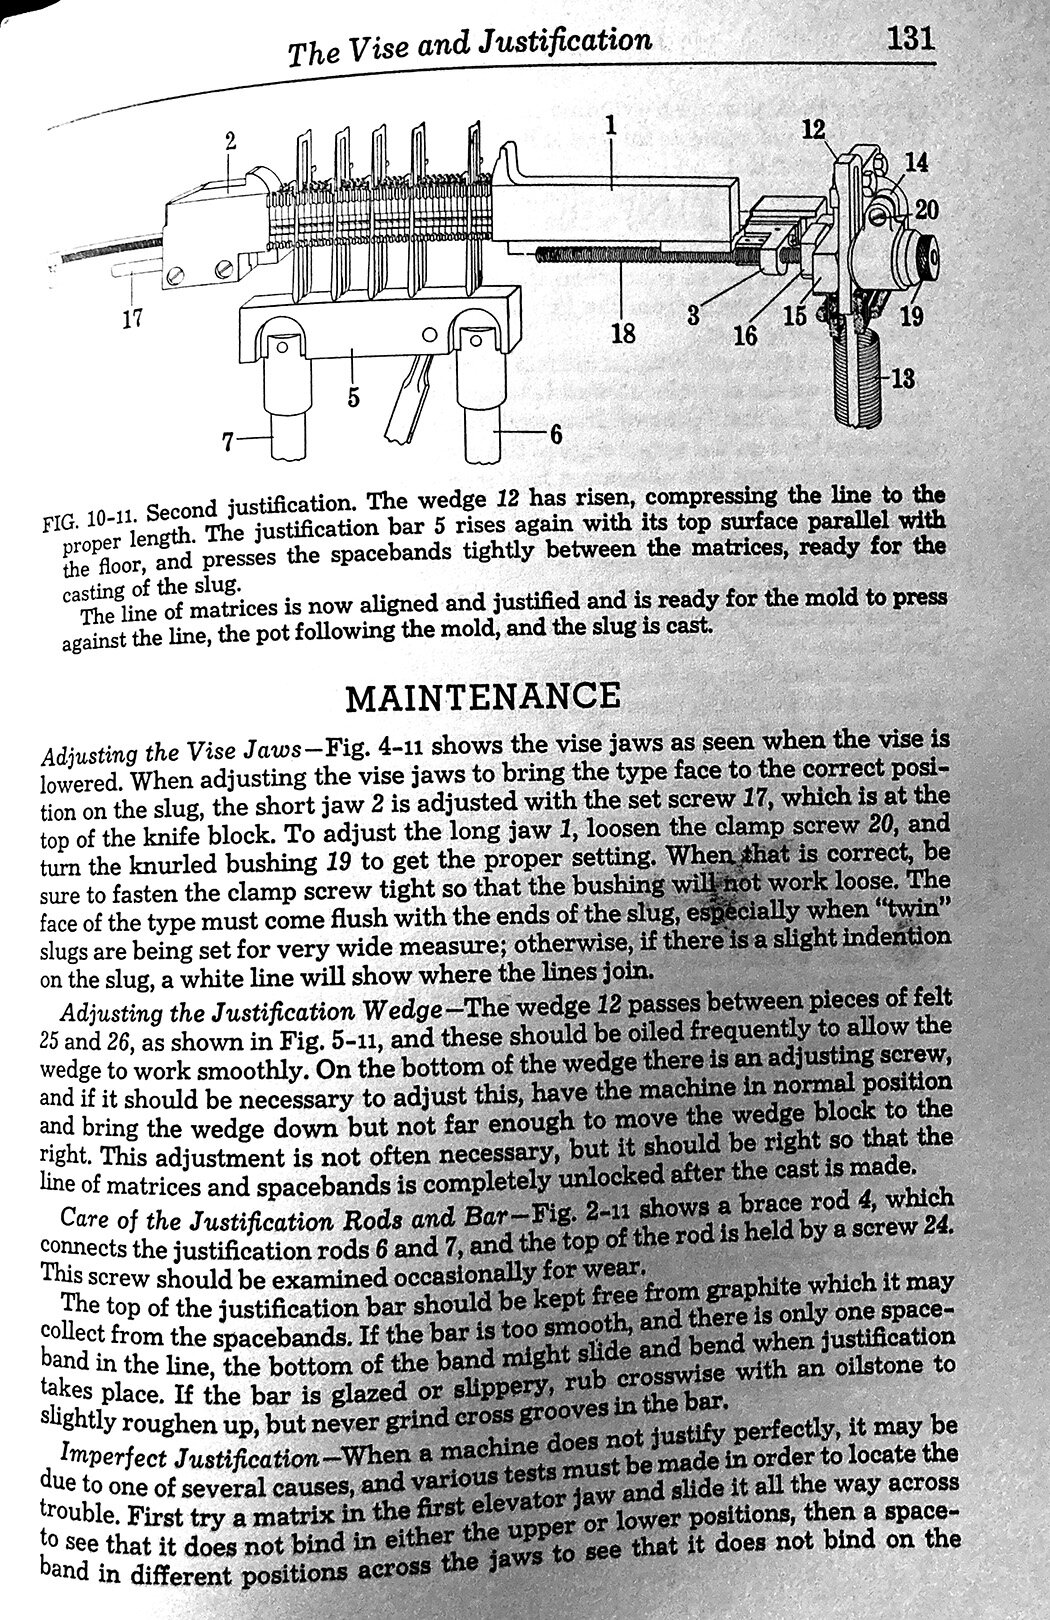 Linotype Machine Principles Page 131.jpg